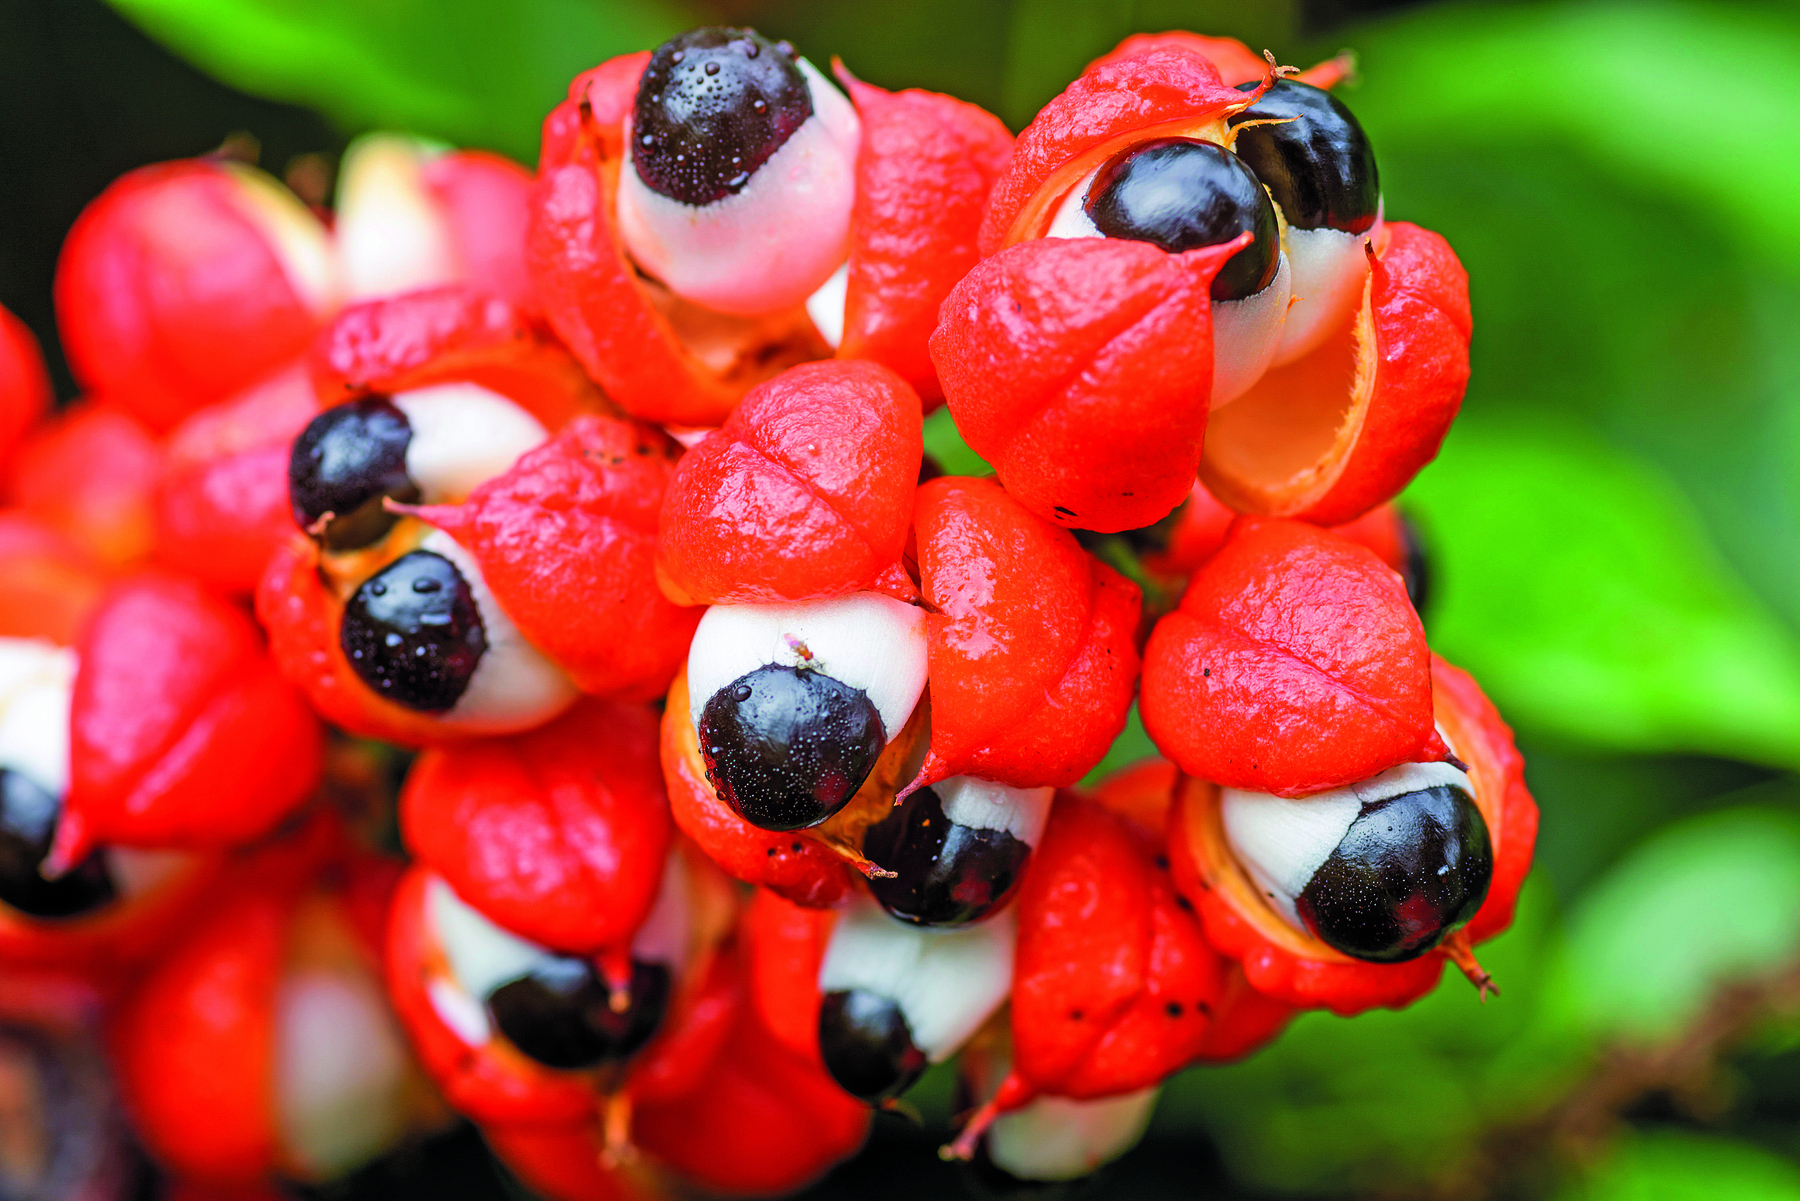 Fotografia. Destaque para frutos de guaraná, com cascas vermelhas, e interior arredondado branco e preto.